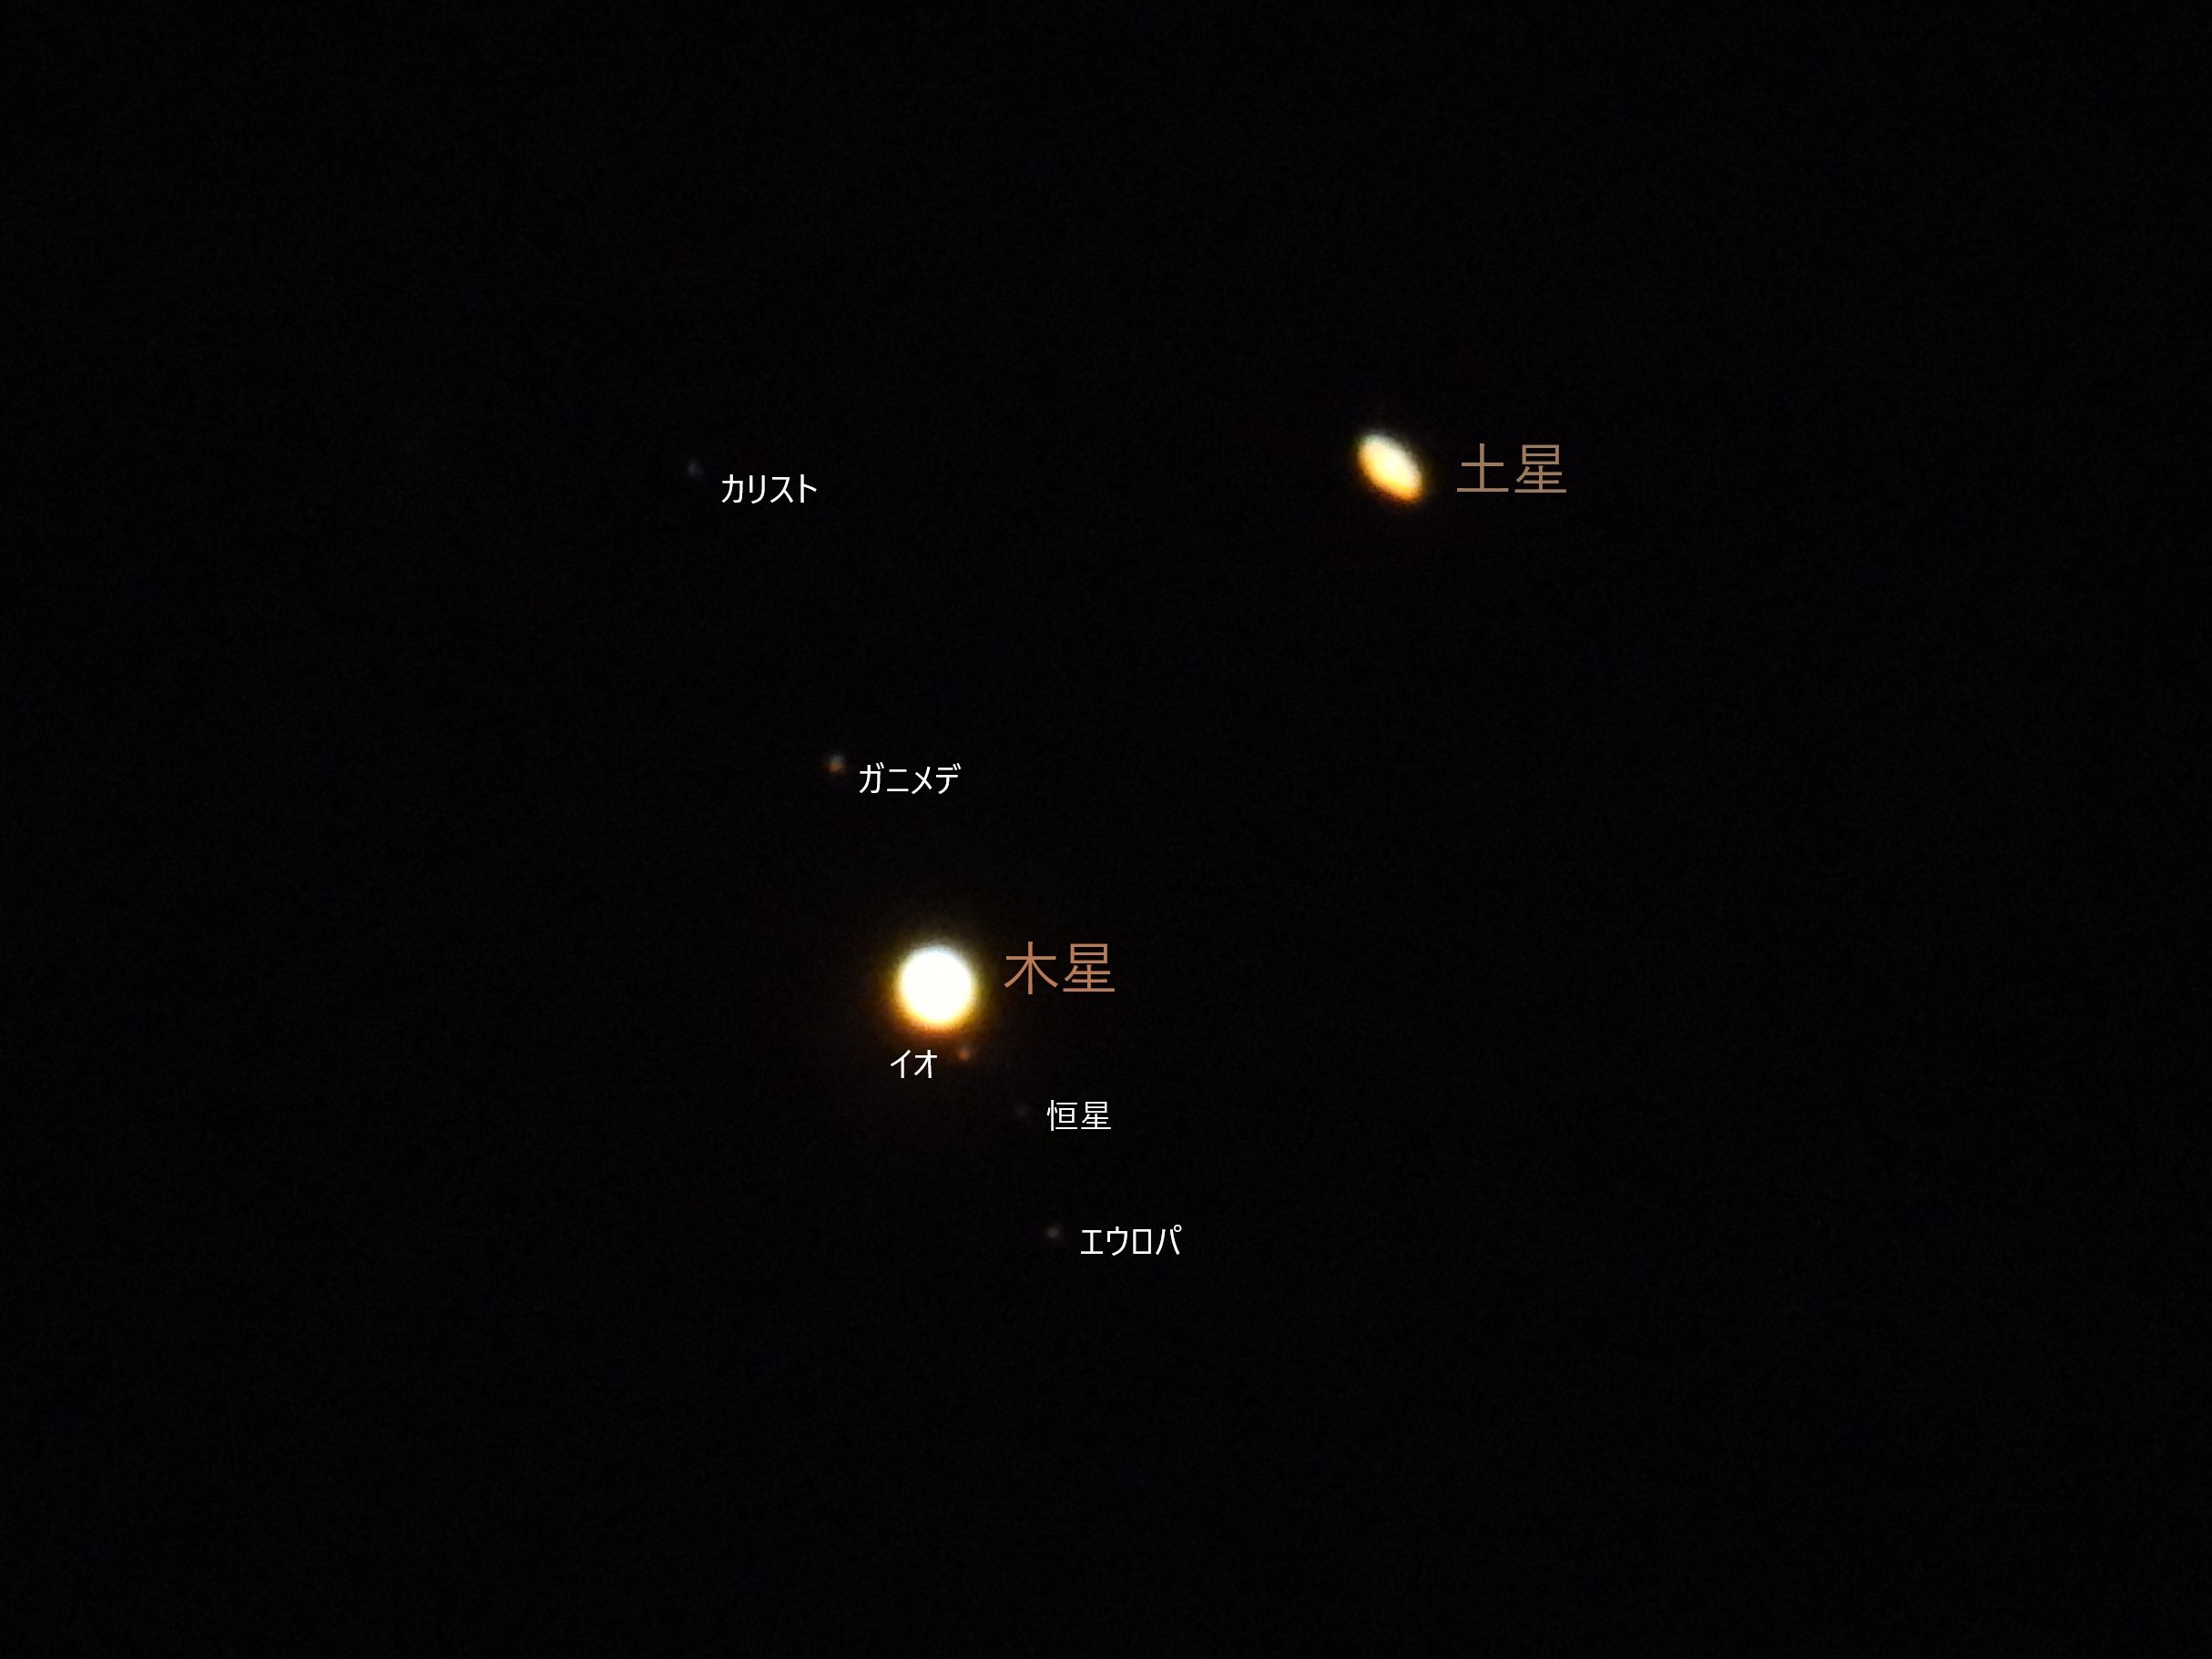 木星と土星